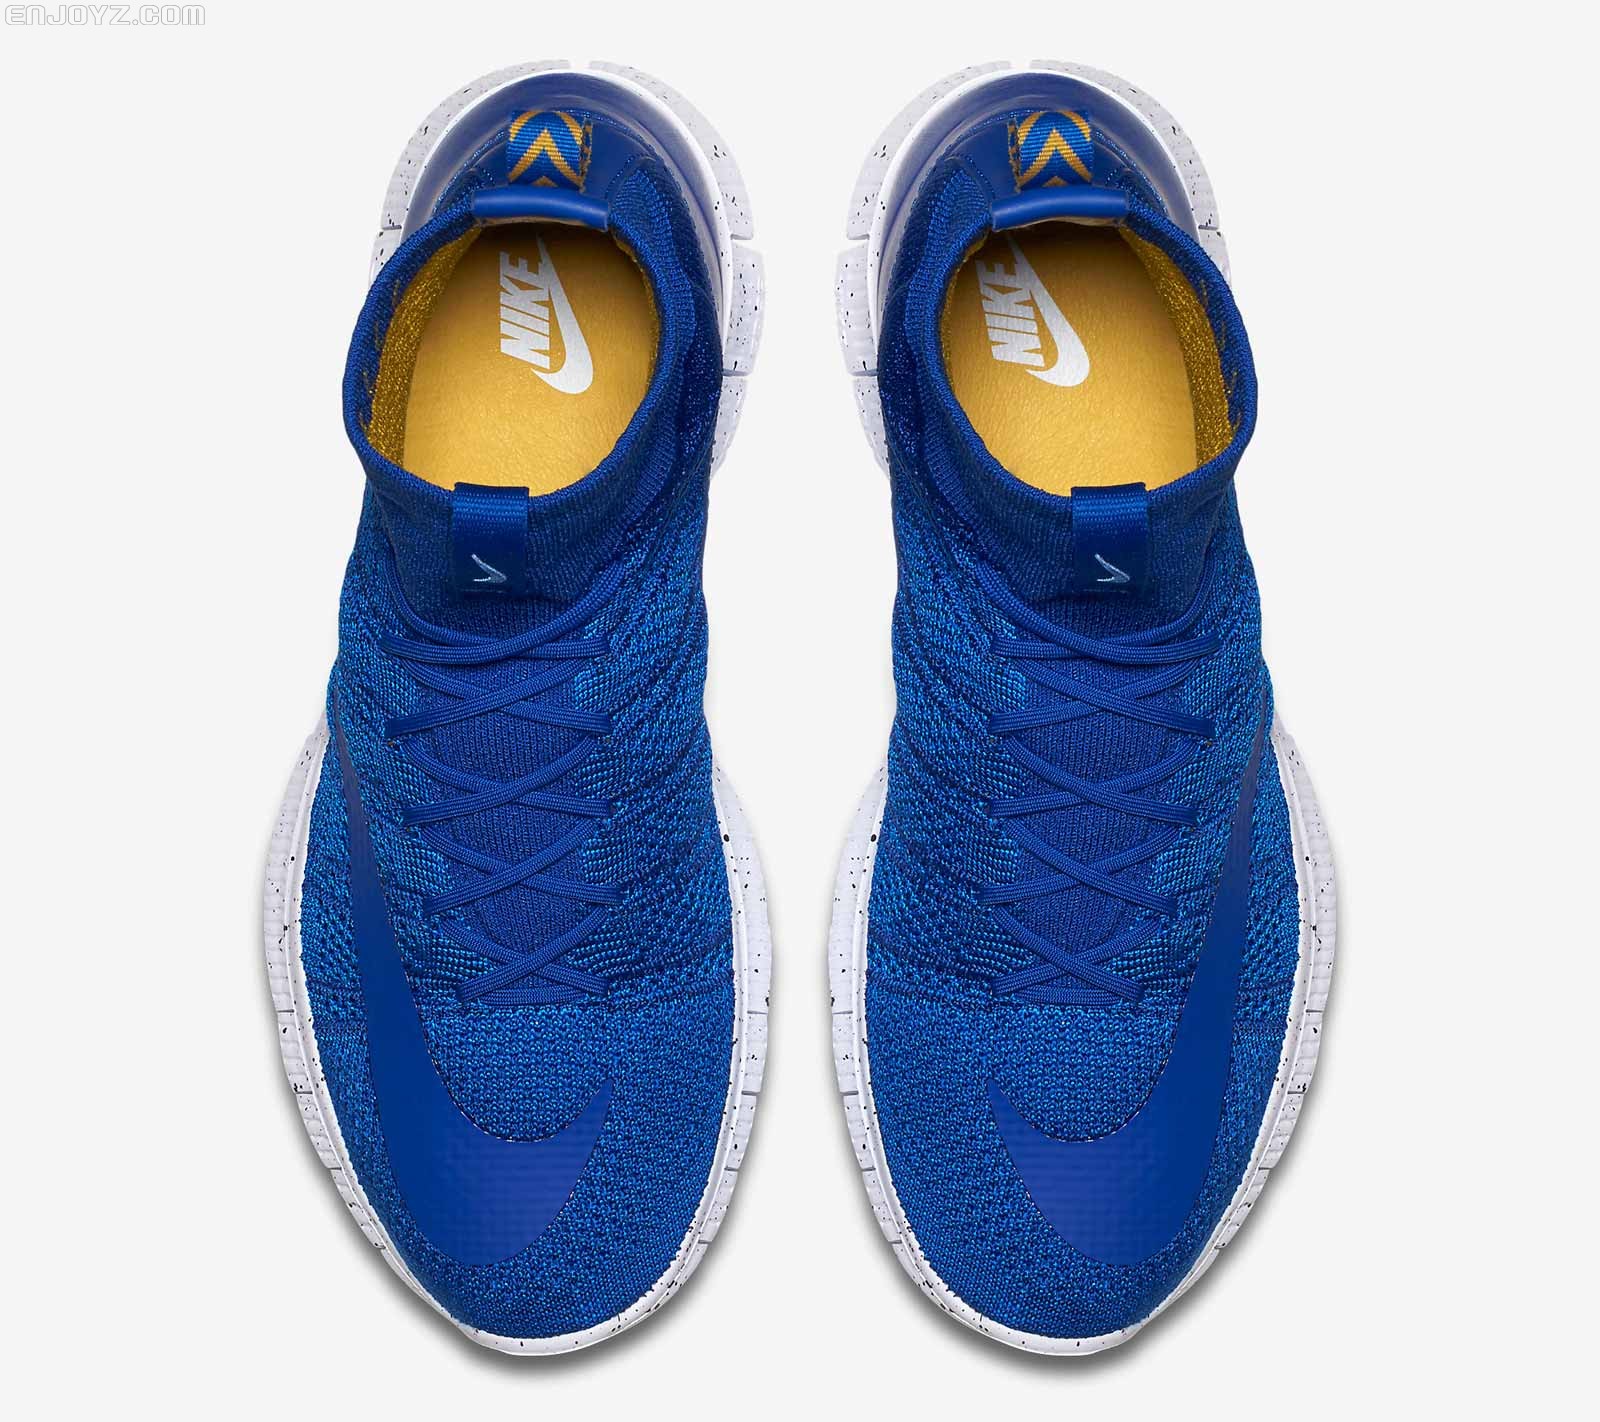 耐克发布“海军学院蓝”配色Lunar Magista II运动鞋 - Nike_耐克足球鞋 - SoccerBible中文站_足球鞋_PDS情报站